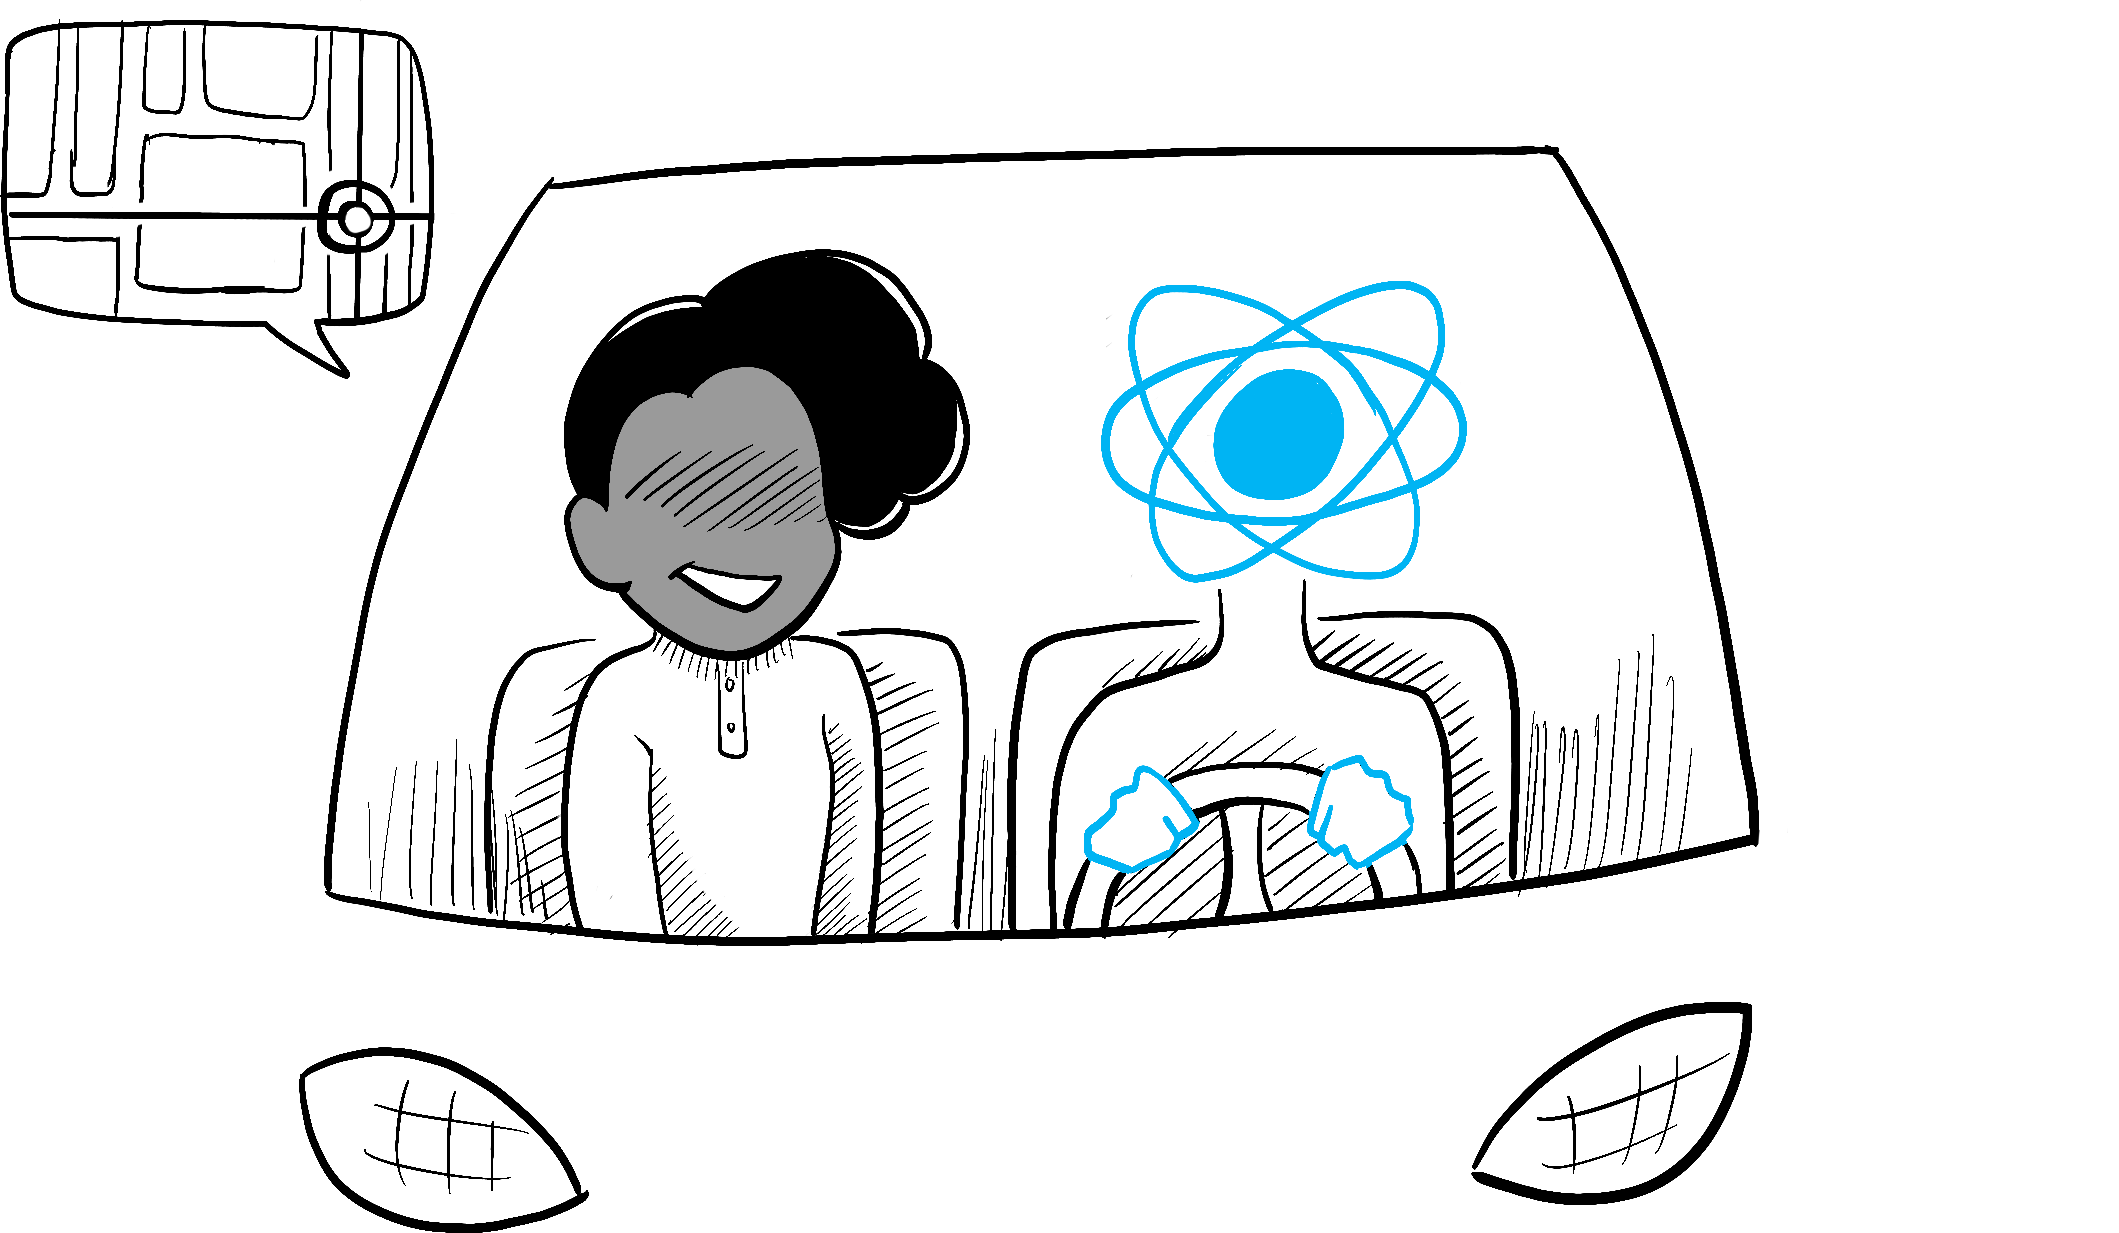 В автомобиле, управляемом React, пассажир просит отвезти его в определенное место на карте. React выясняет, как это сделать".